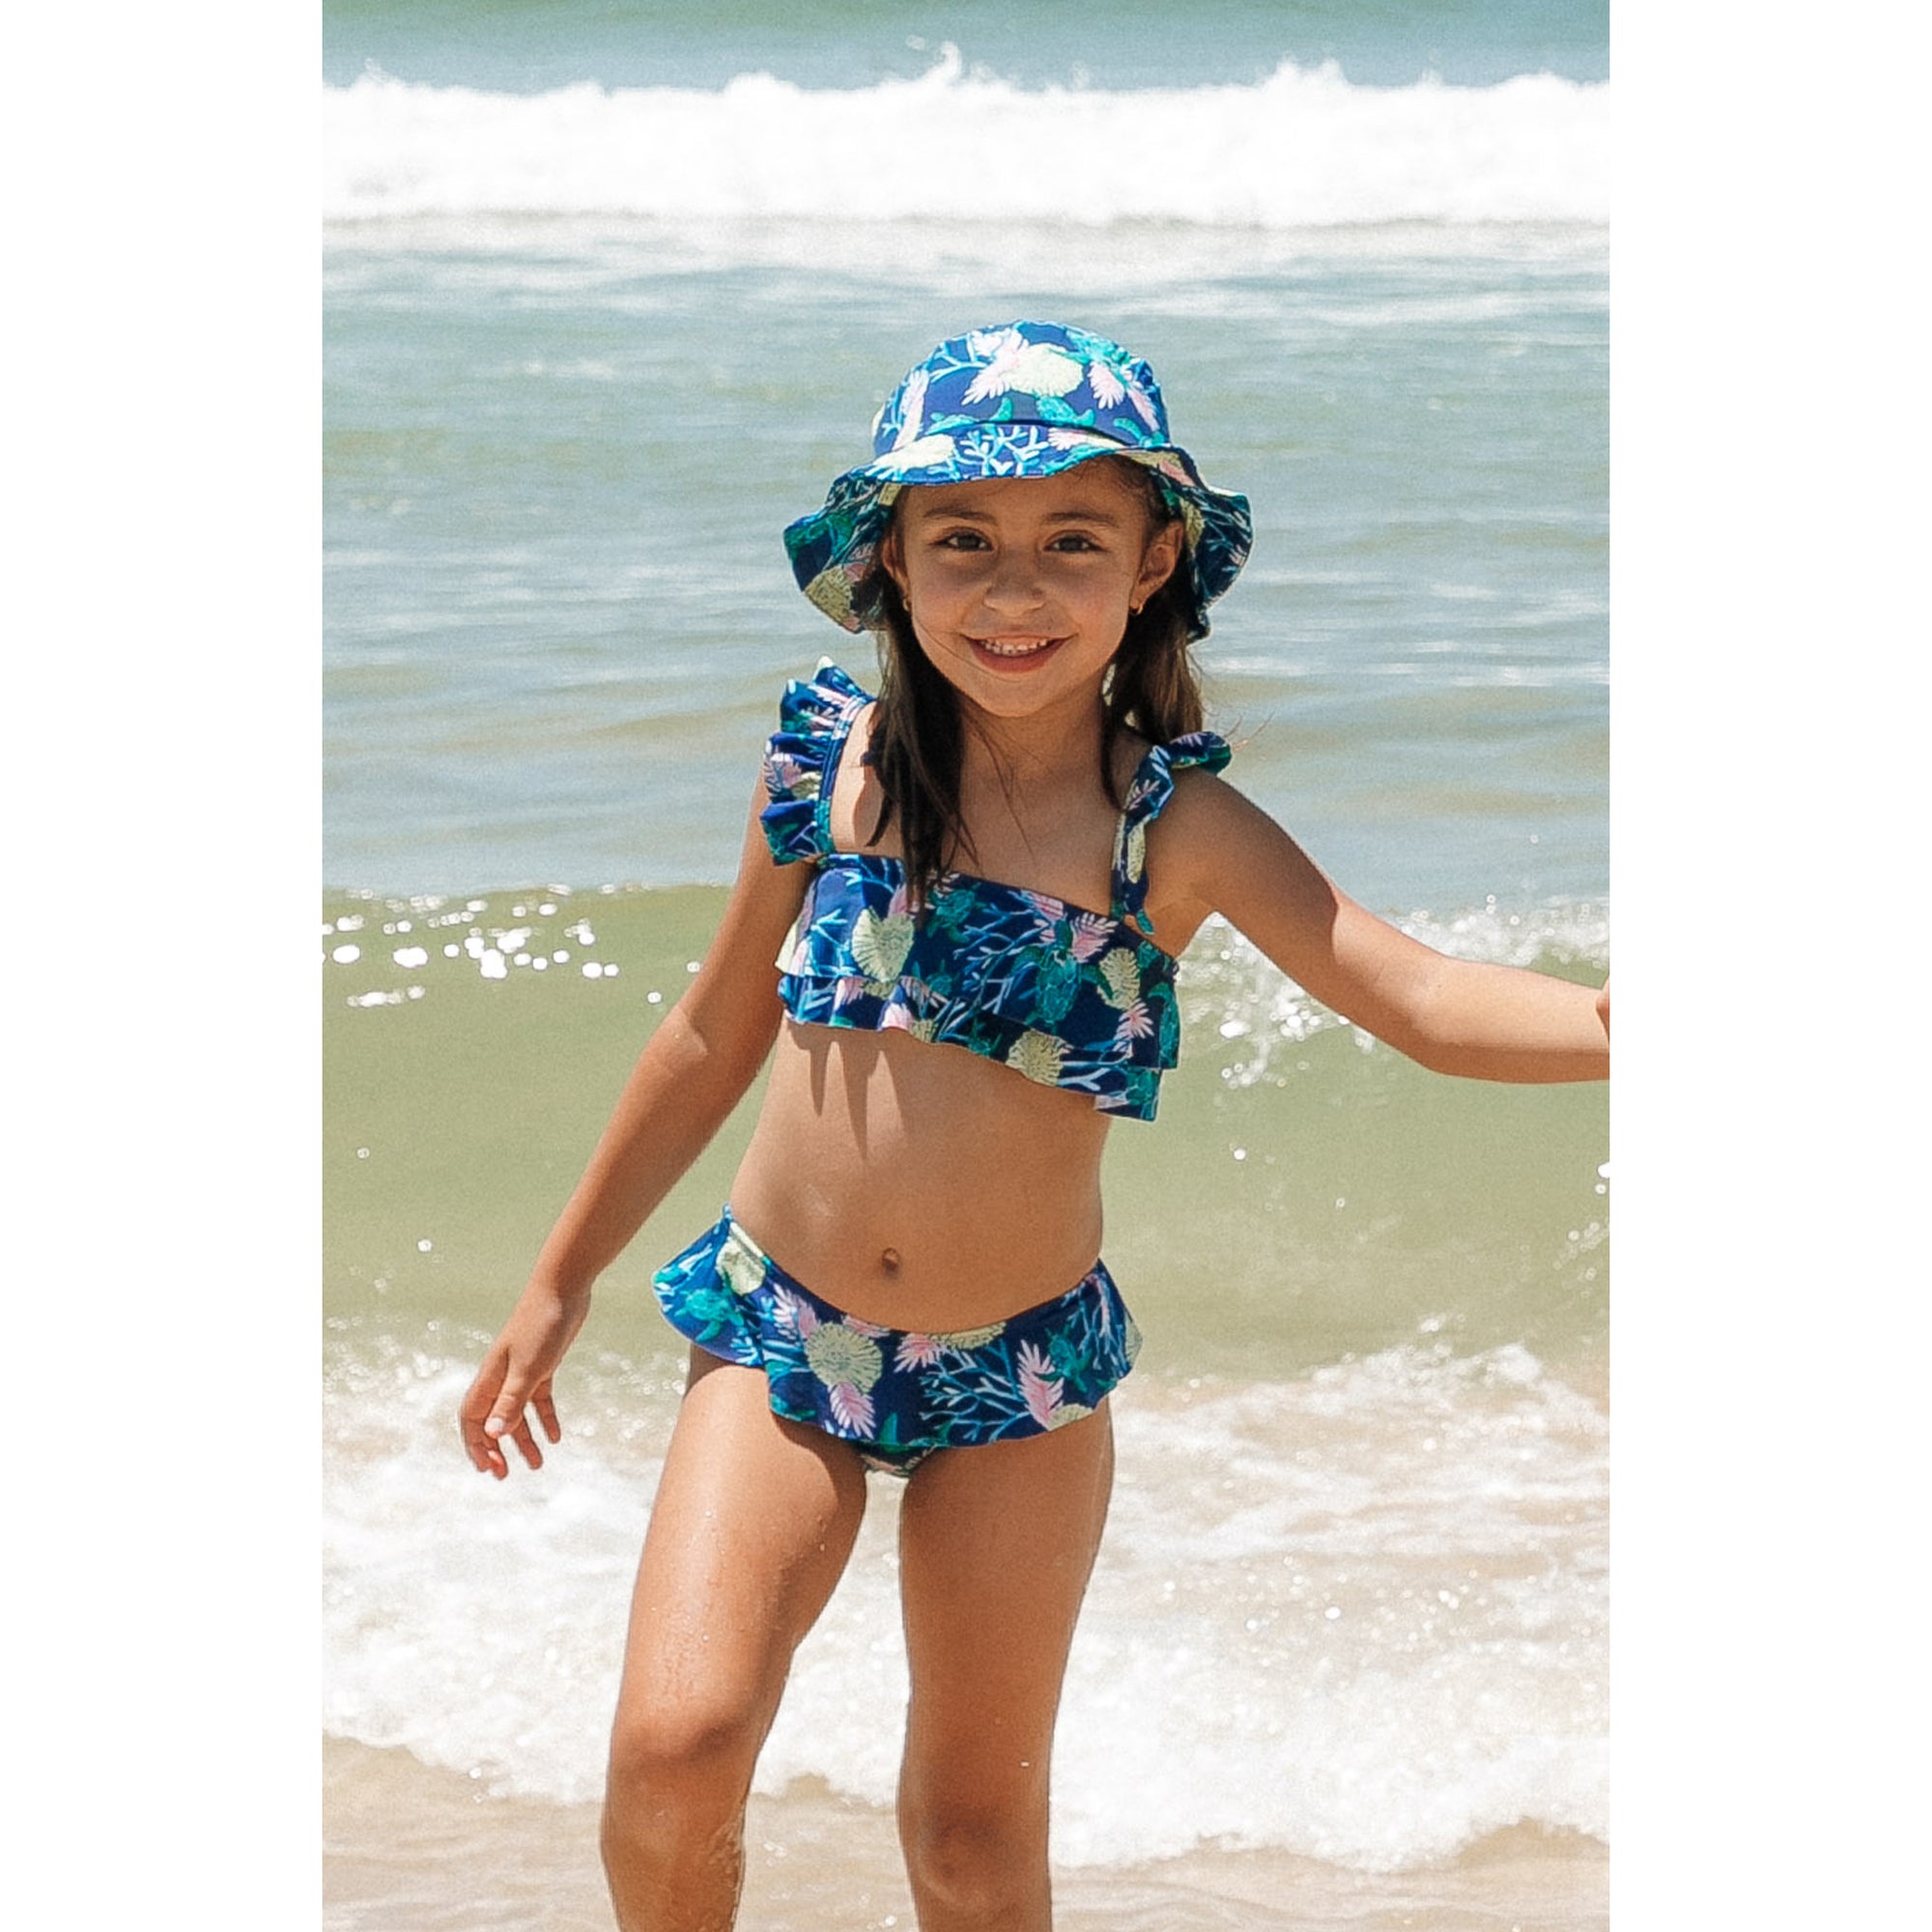 Chapéuzinho Infantil de Praia de Lycra com Protecao UV, na Estampa Tartaruga Azul da Lili Sampedro com Look combinando com a Mae